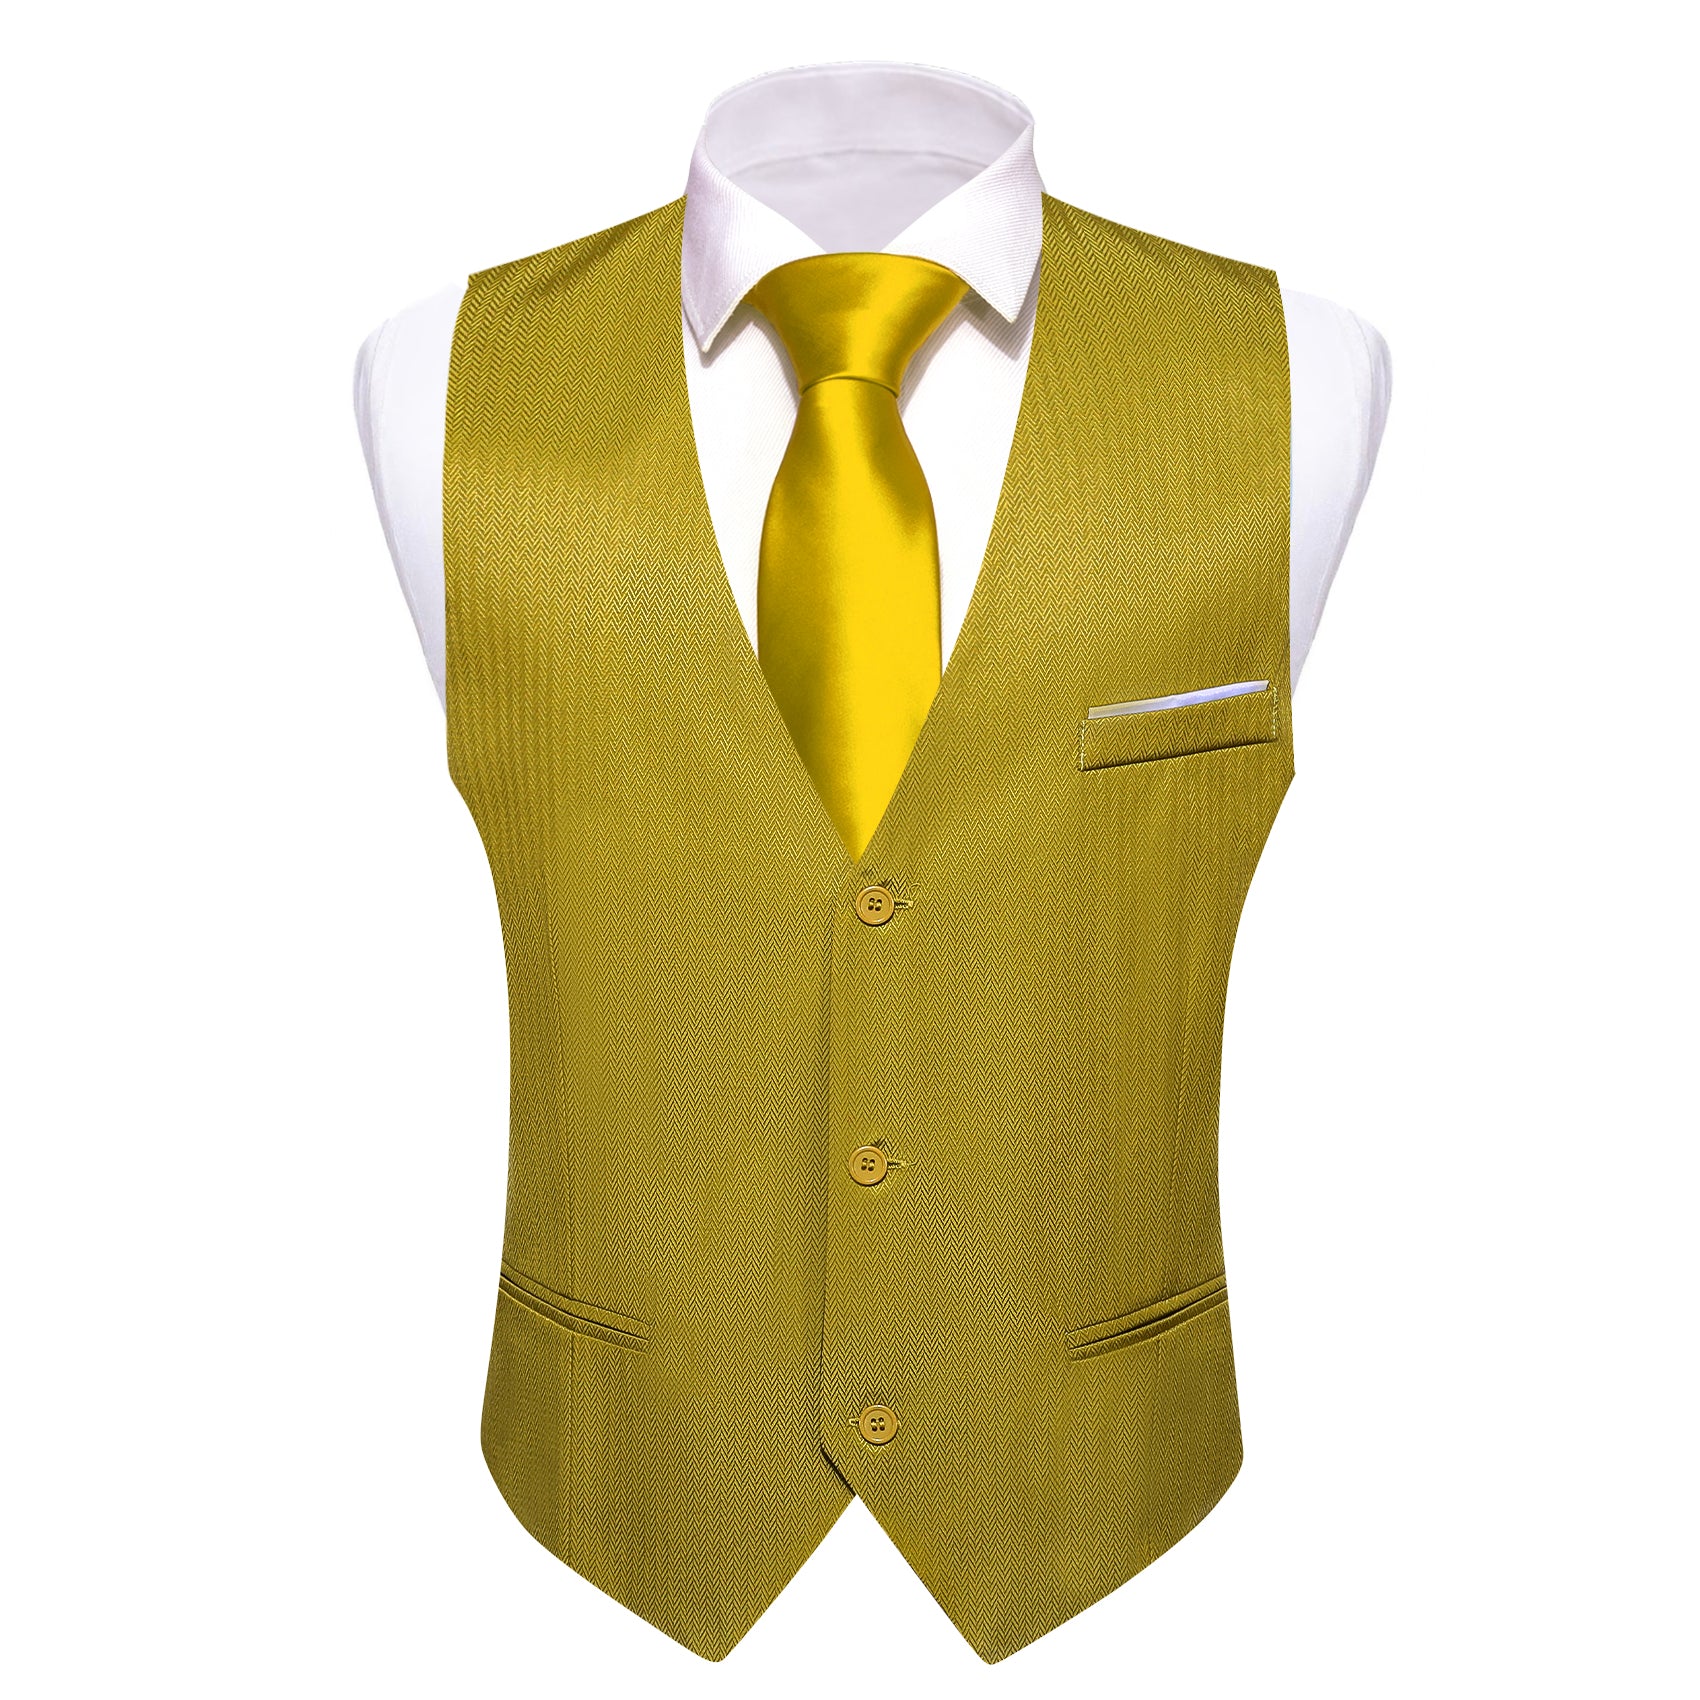 Barry.wang Work Vest Olive Green Solid Vest Suit for Men Business